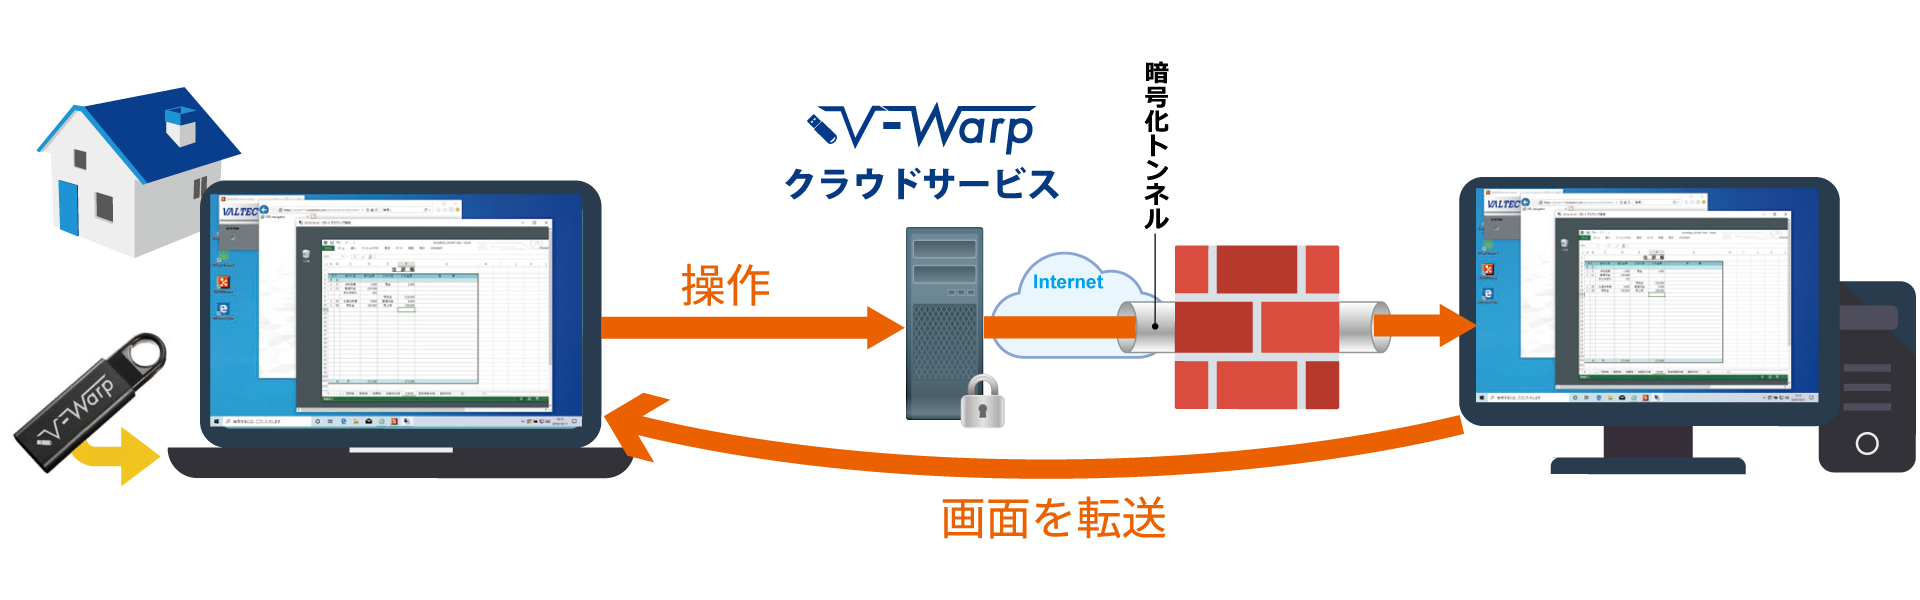 V-Warp表